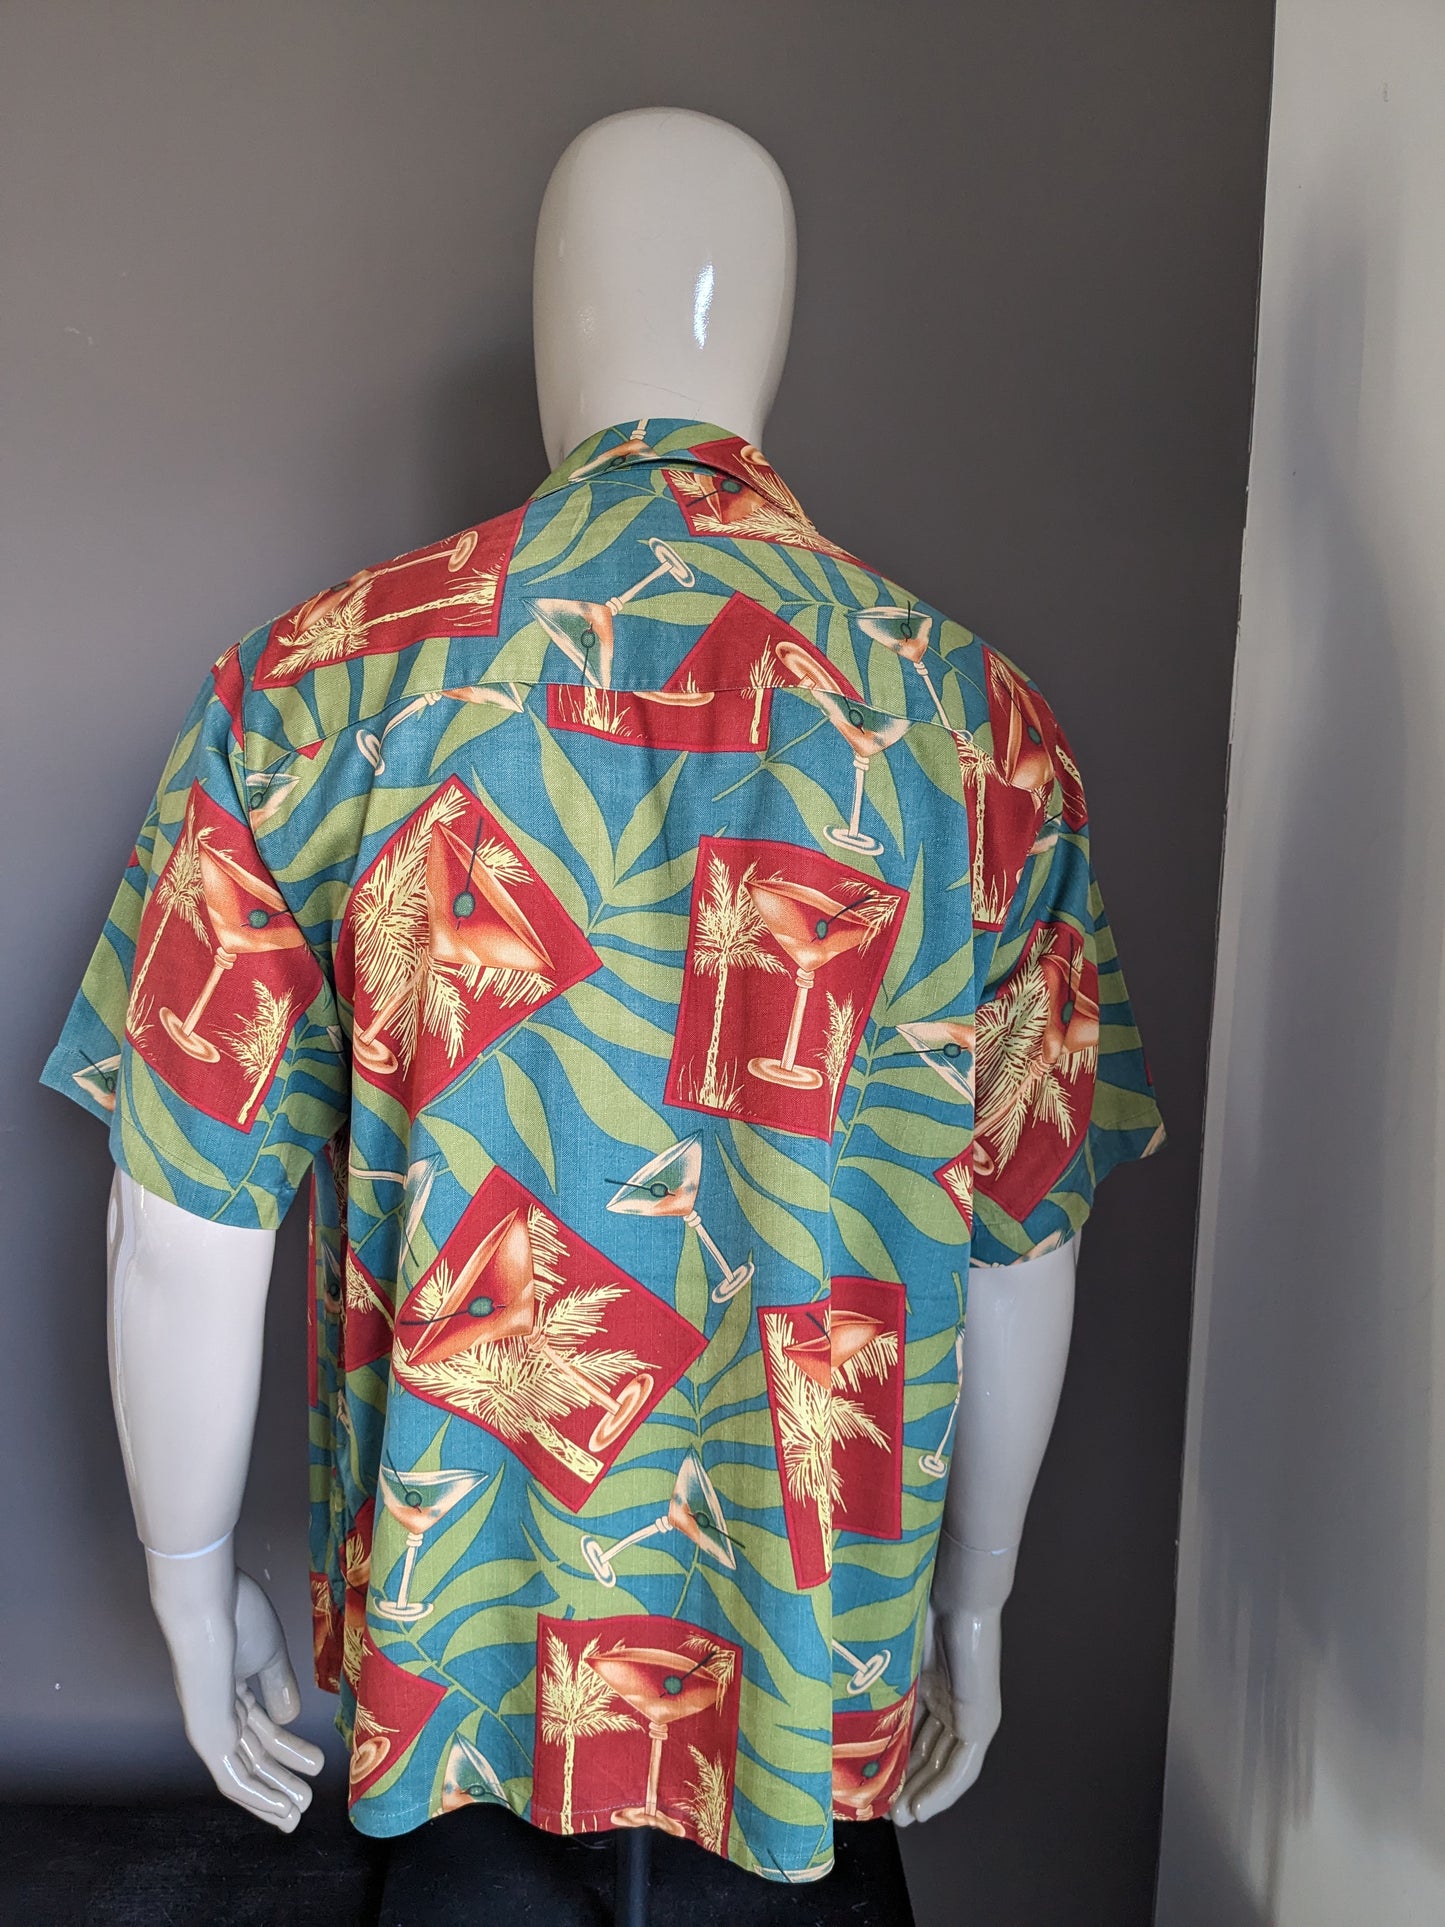 Banana Cabana Original Hawaii Shirt Sleeve. Impression bleu vert rouge. Taille l / xl.